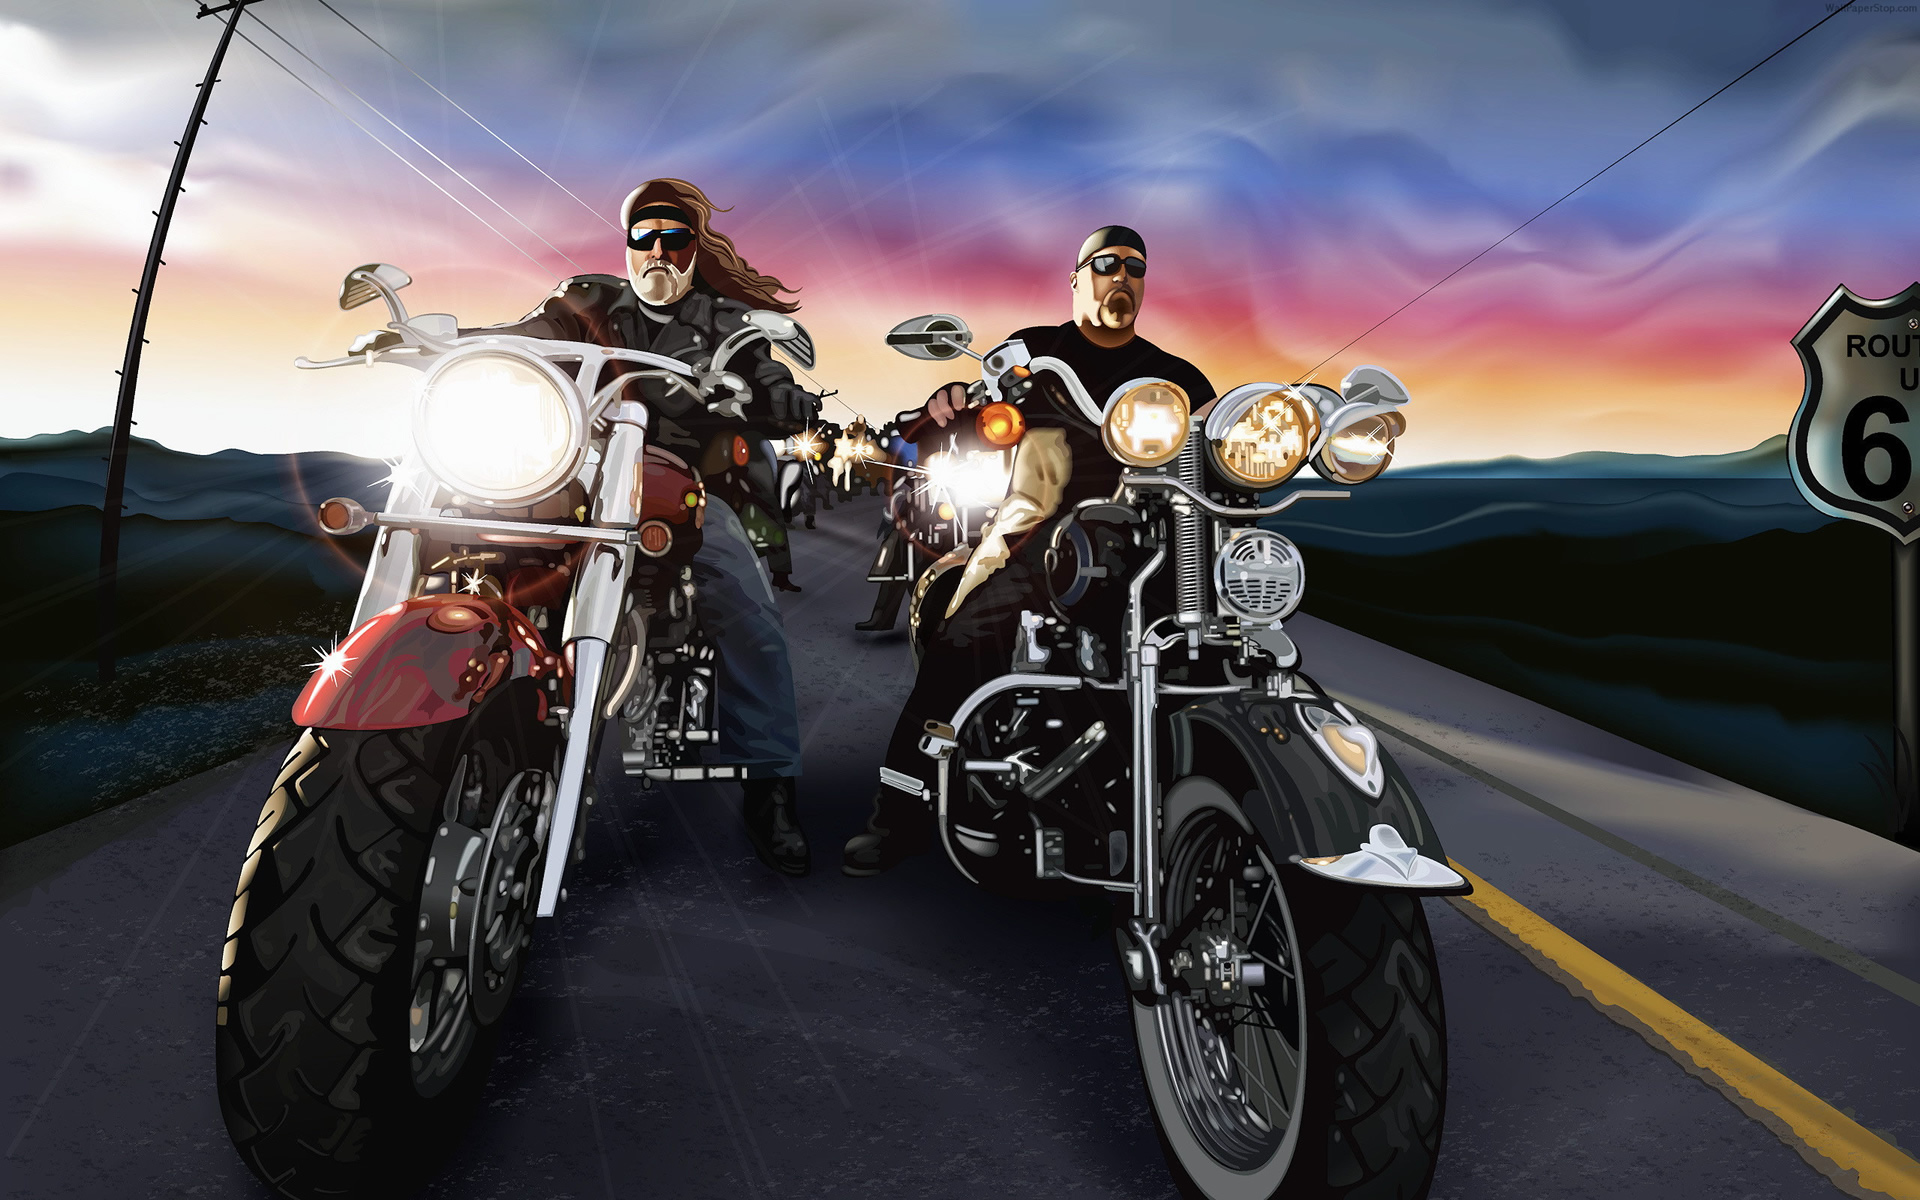 Descarga gratuita de fondo de pantalla para móvil de Motocicletas, Motocicleta, Bicicleta, Vehículos.